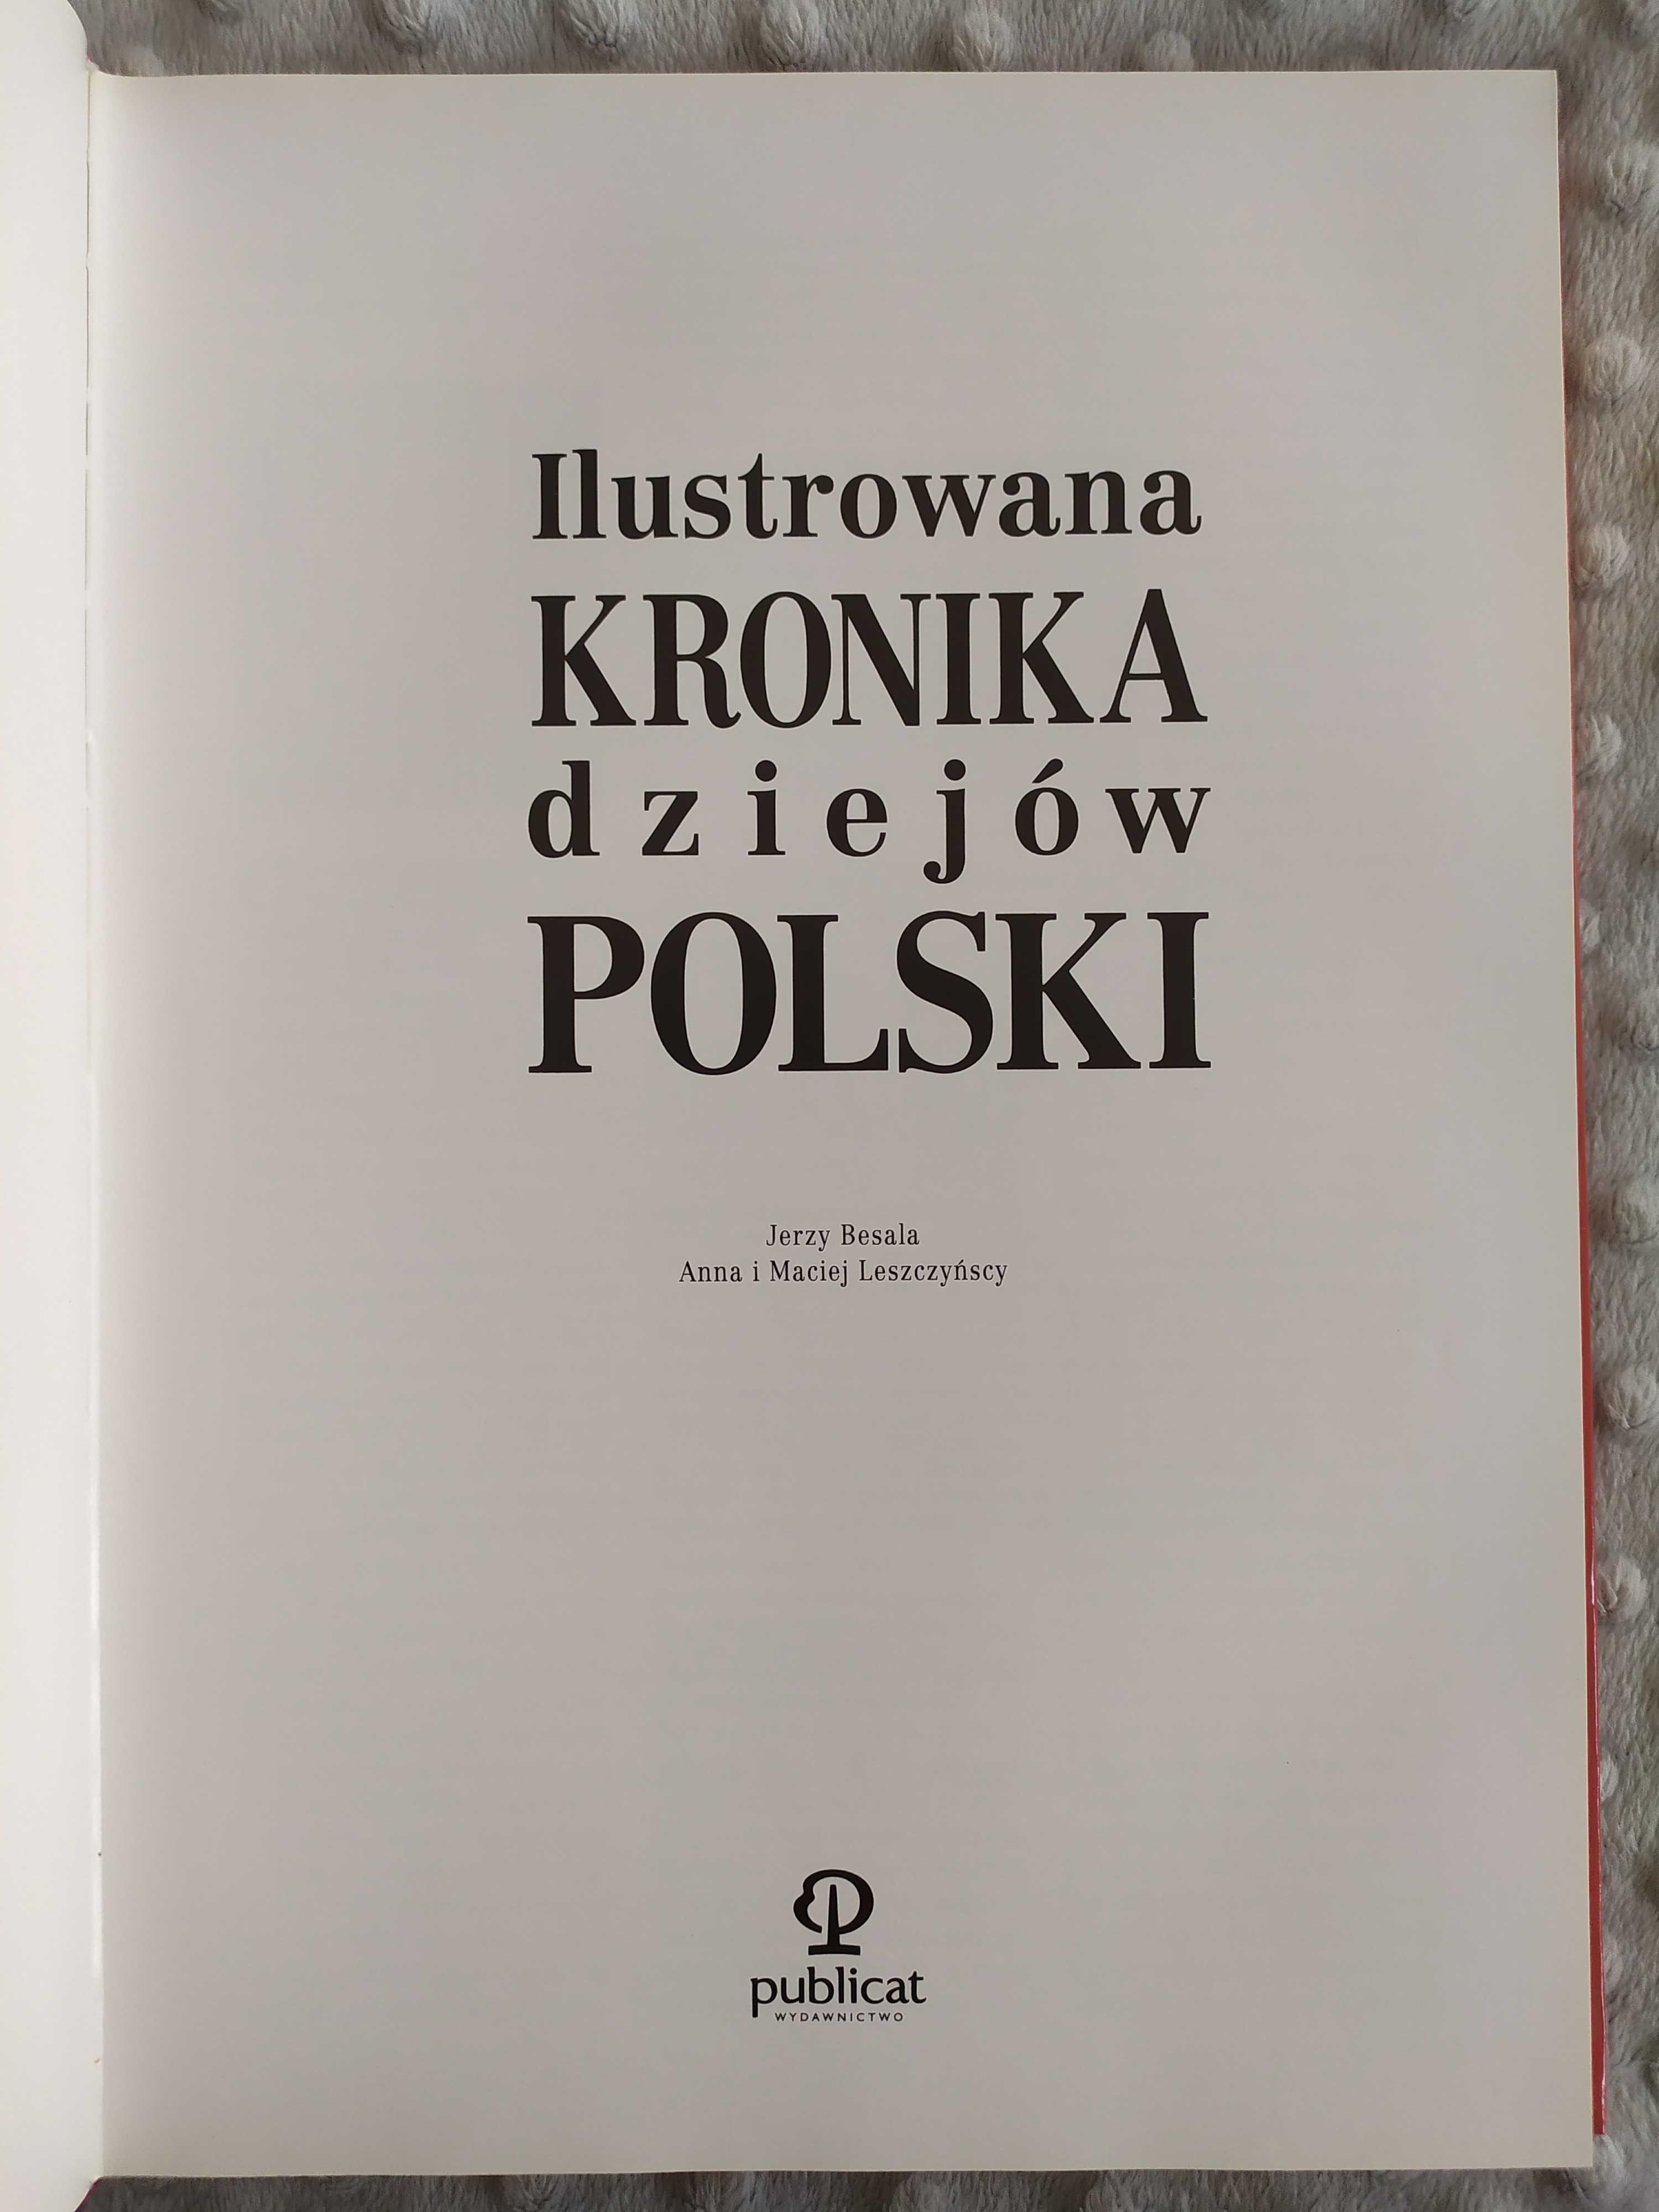 Ilustrowana kronika dziejów Polski od roku 960